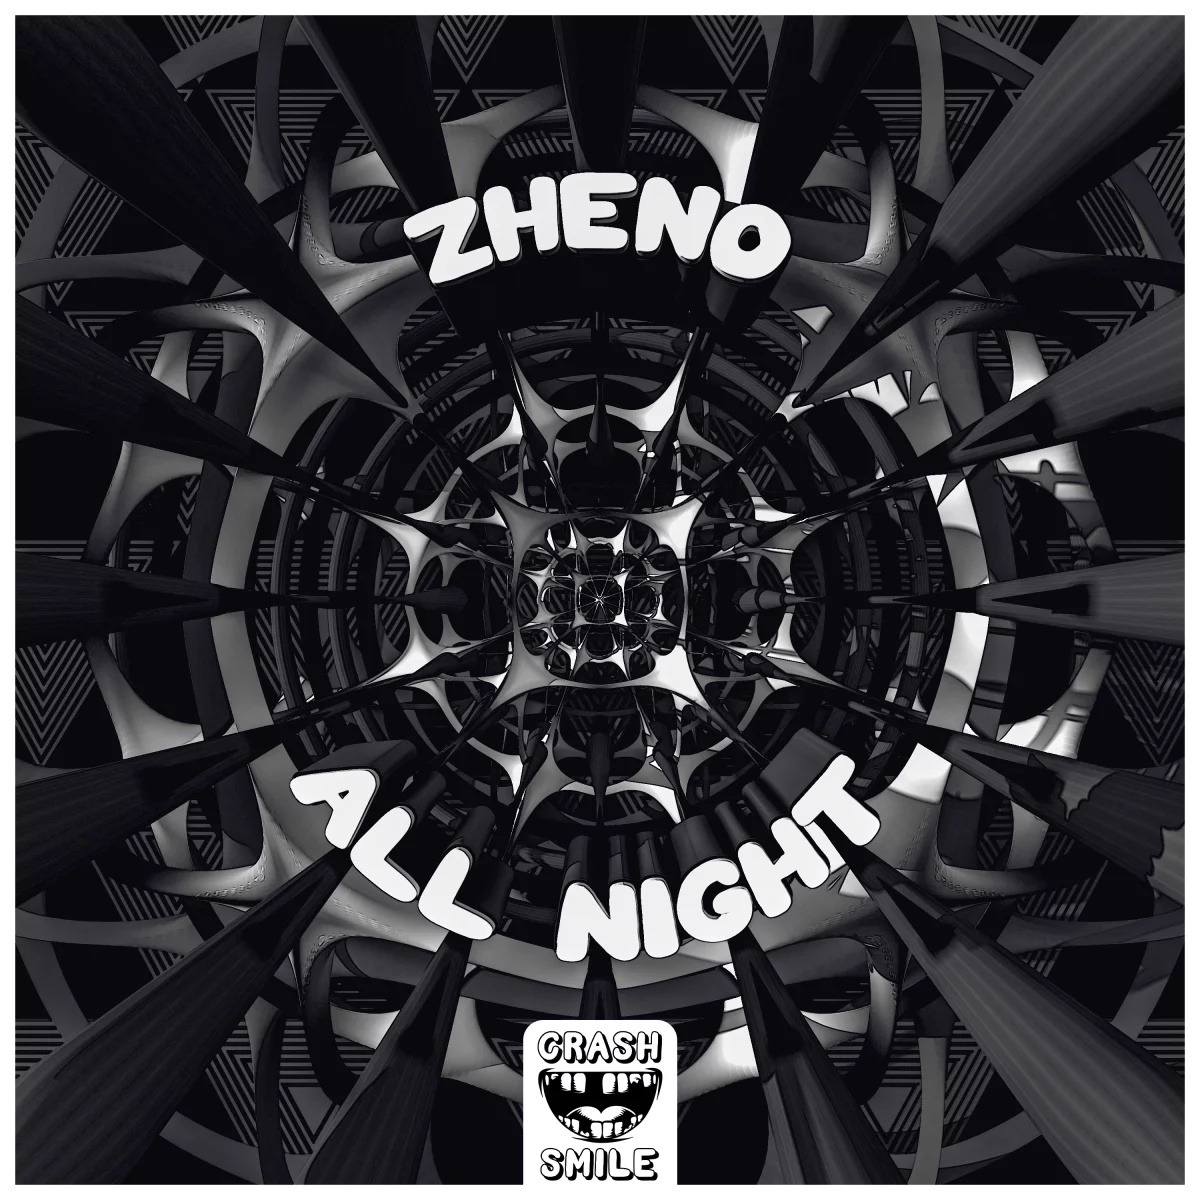 All Night - Zheno⁠